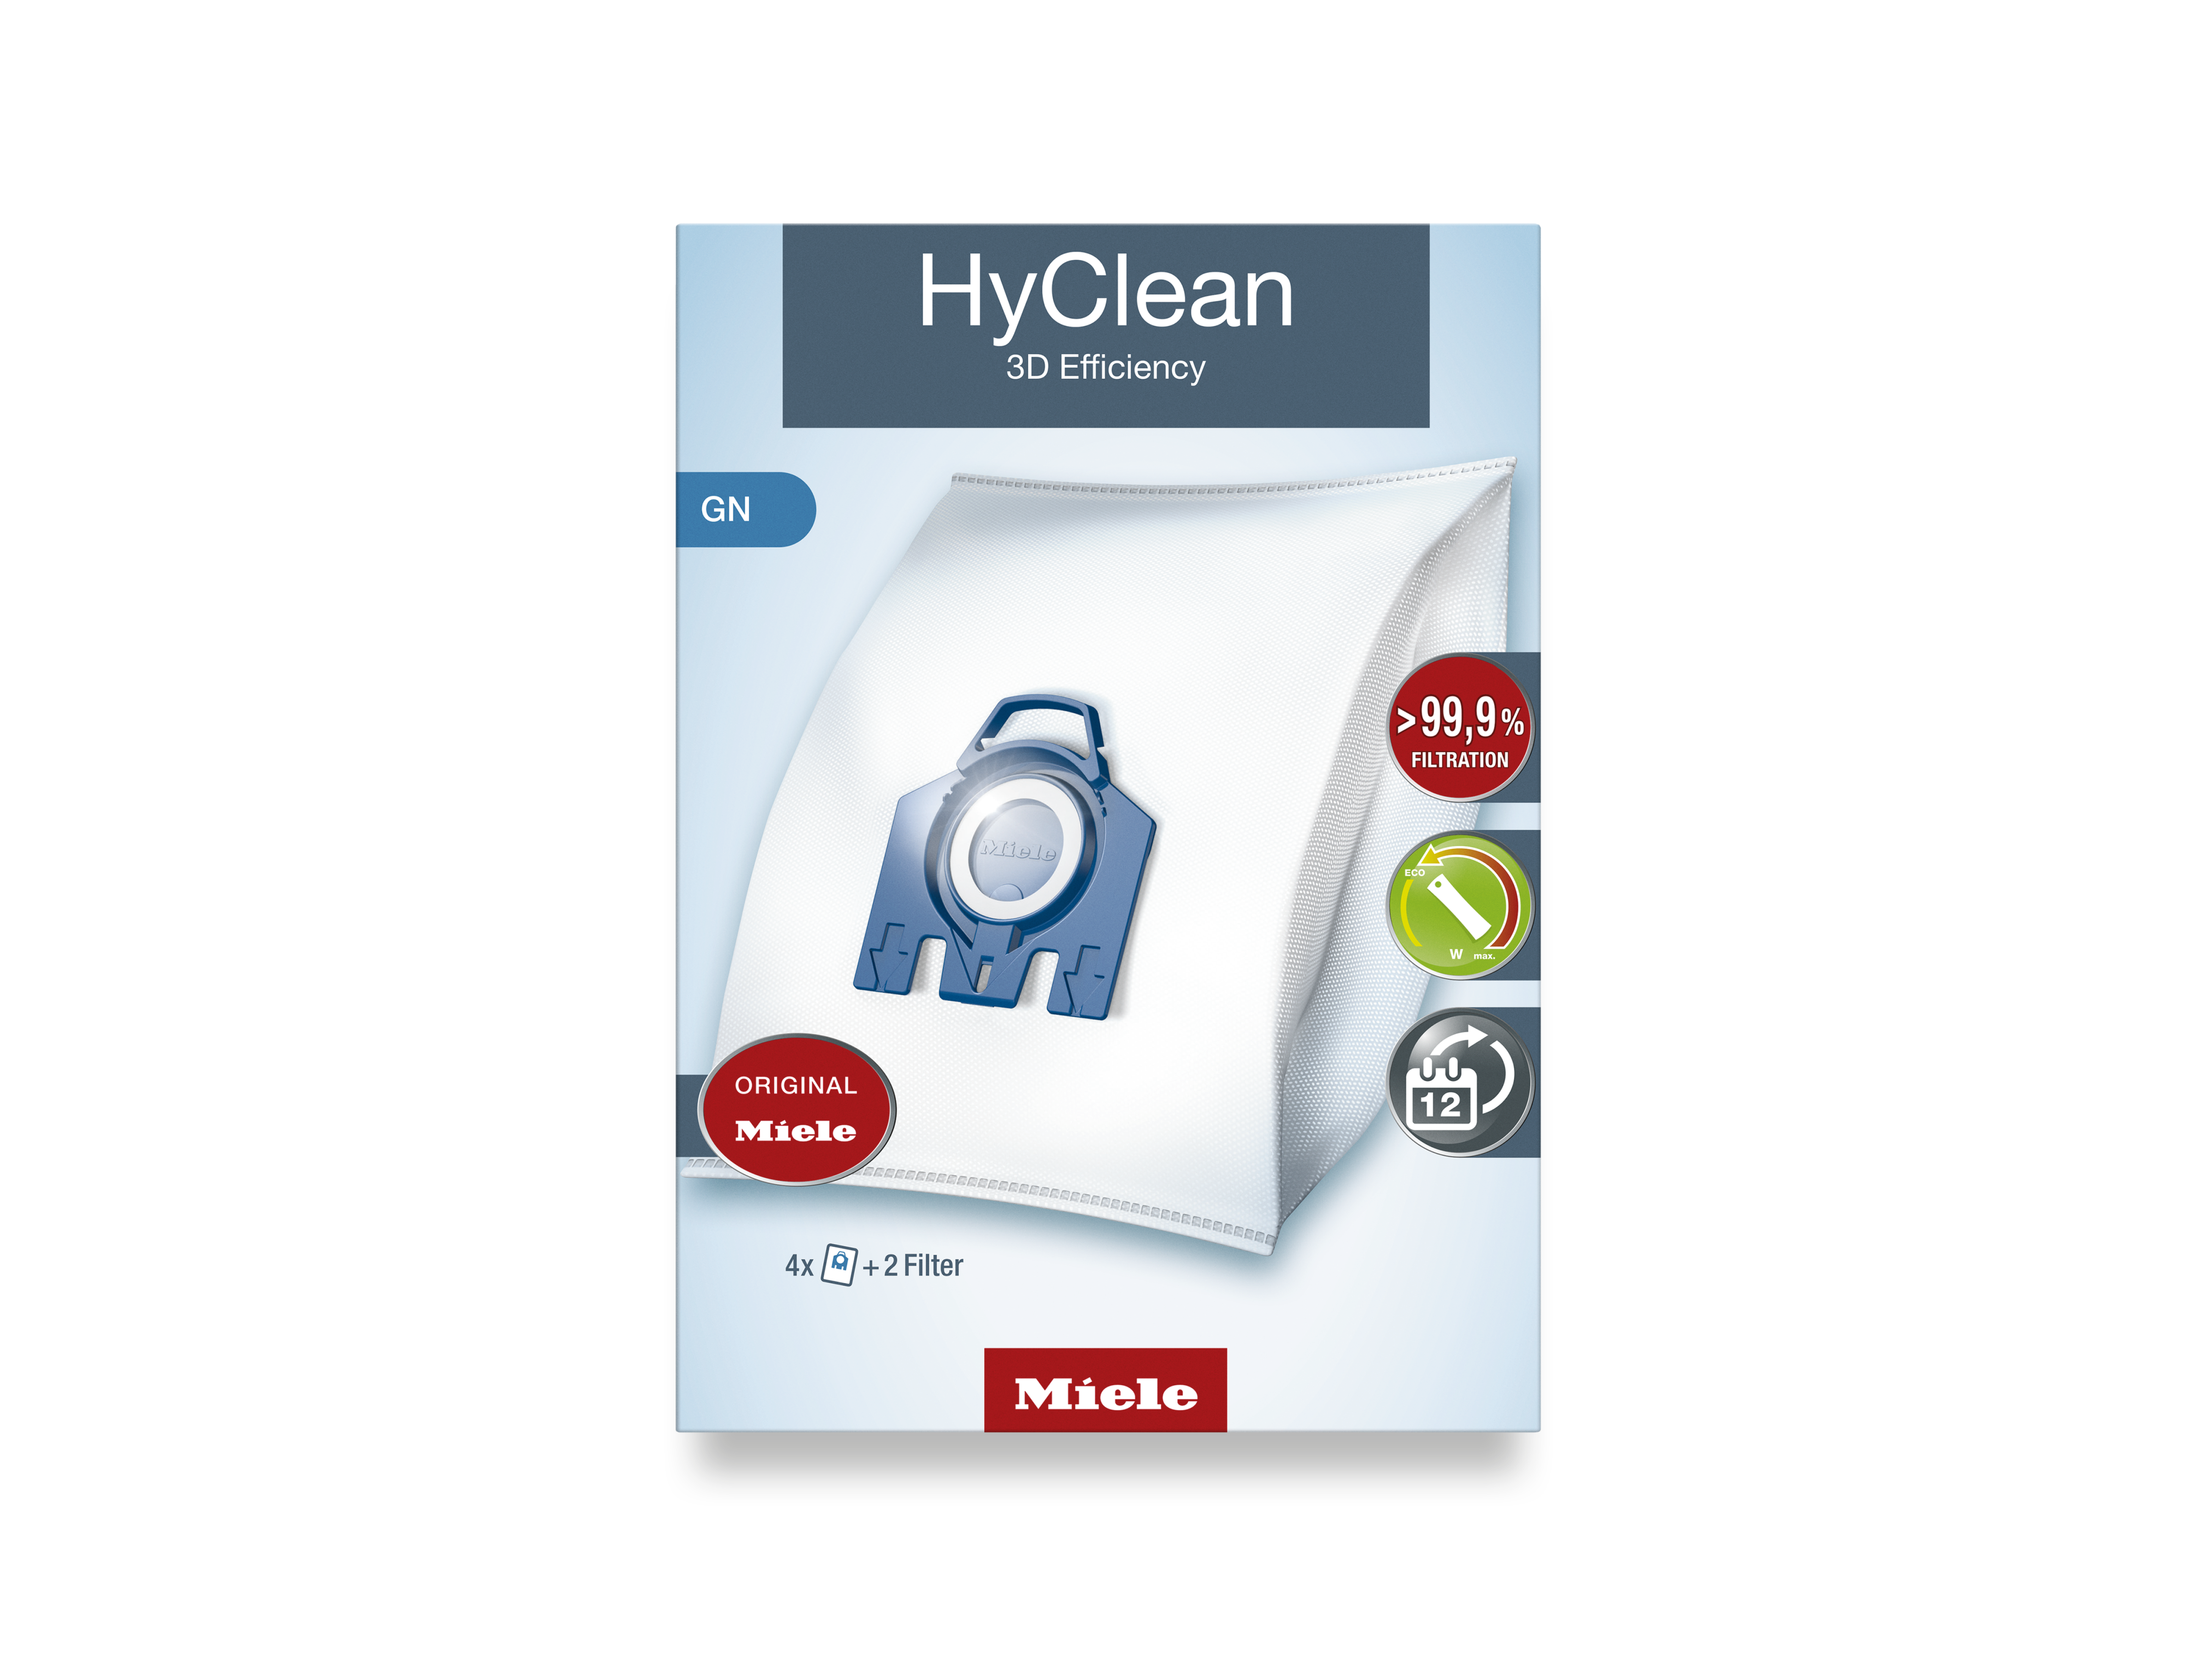 Cómo funcionan las bolsas de aspiración HyClean 3D de Miele? 